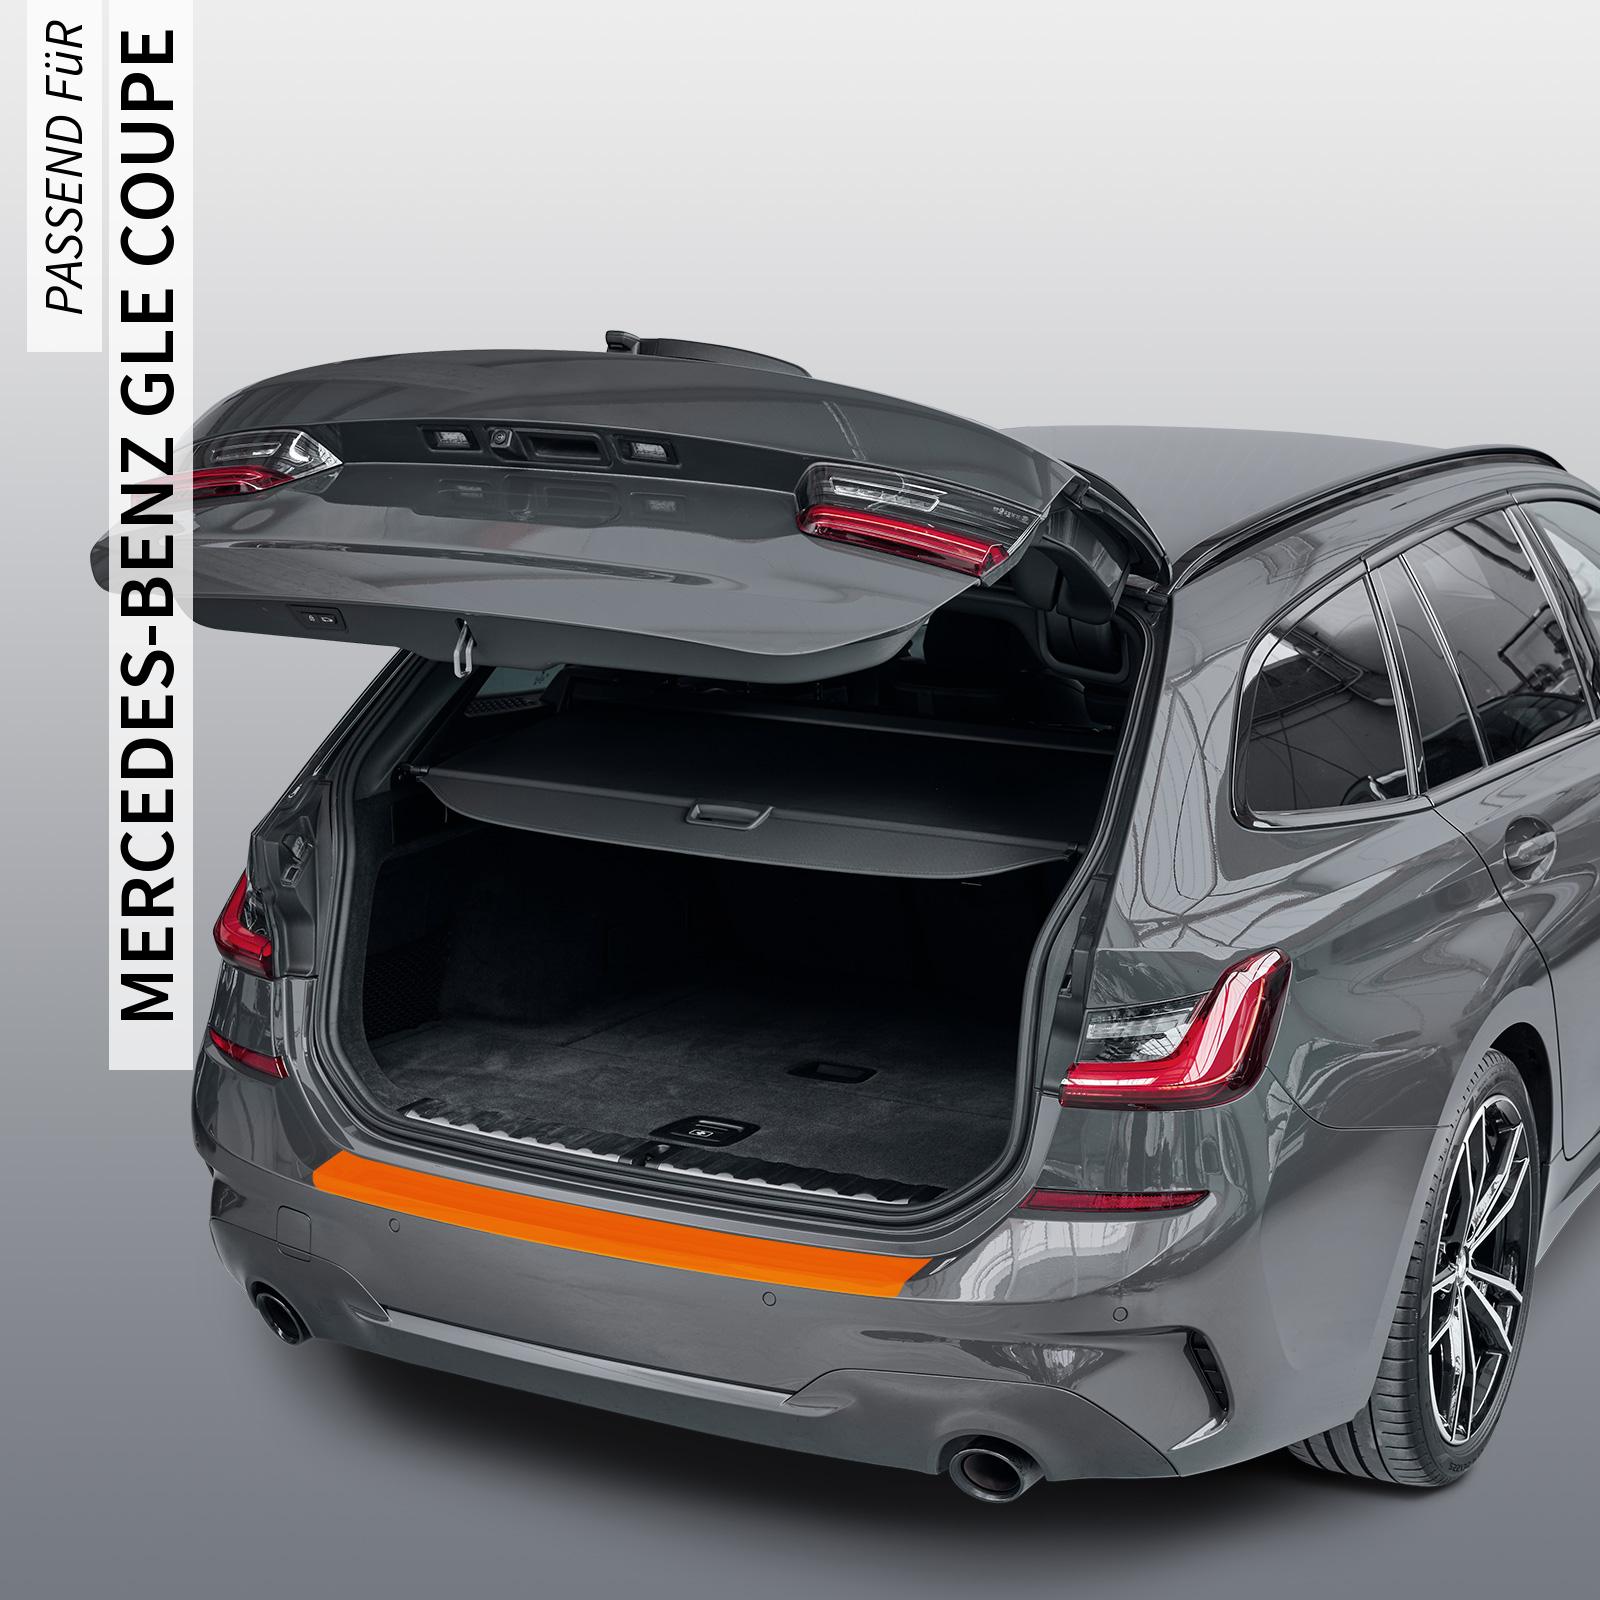 Ladekantenschutzfolie - Transparent Glatt Hochglänzend 240 µm stark für Mercedes-Benz GLE Coupe Typ C167, ab BJ 2020